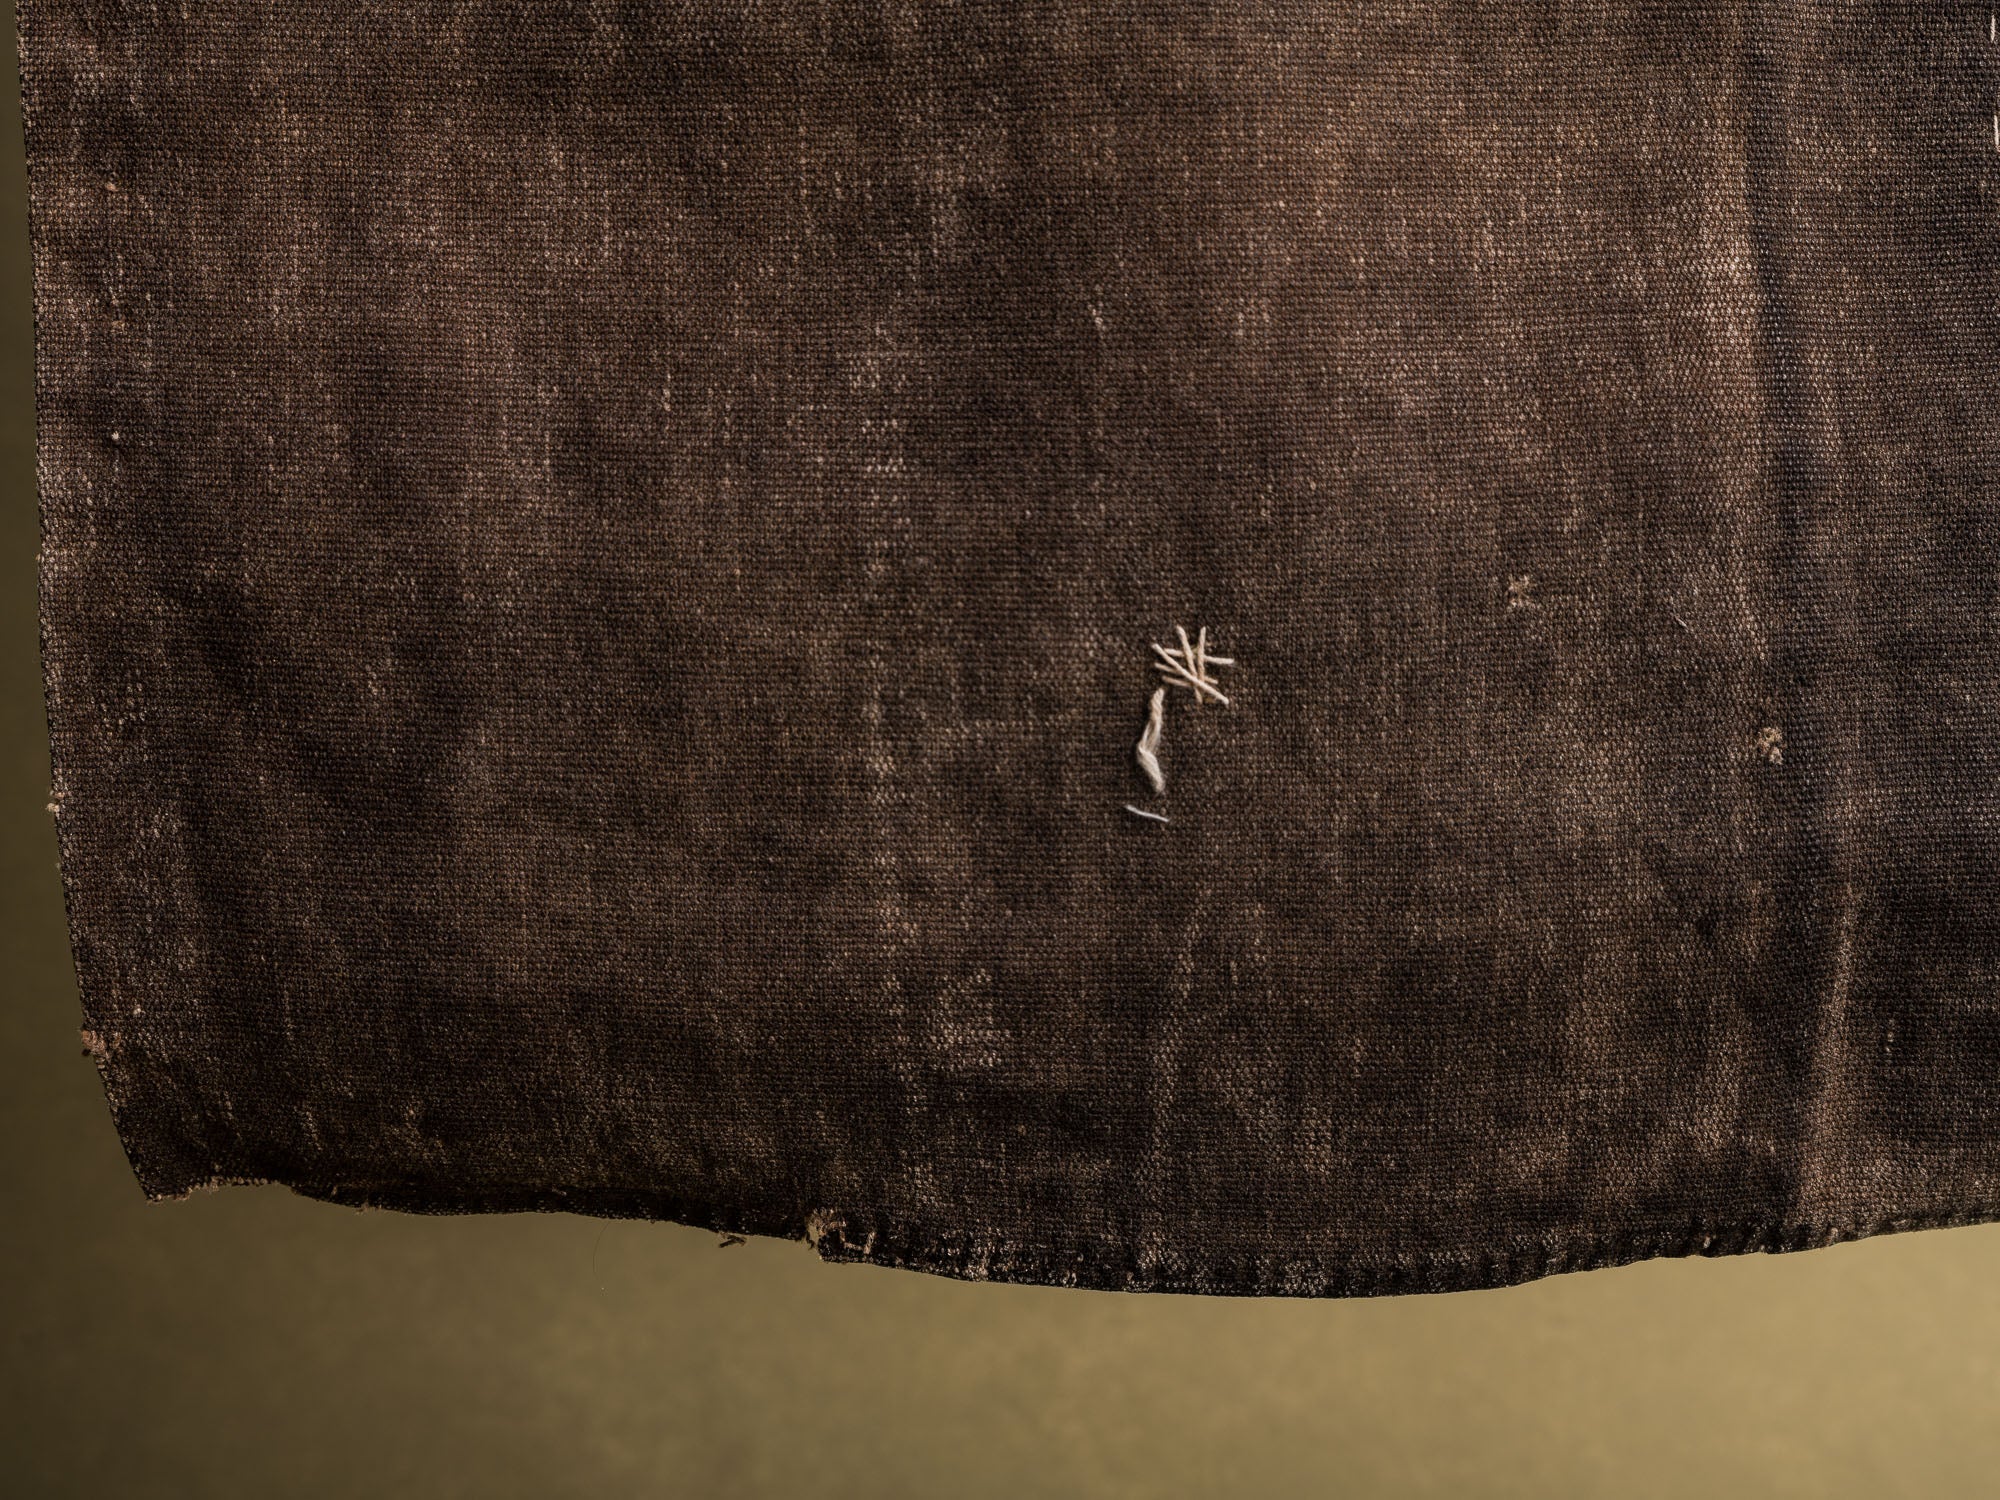 Mitate, sakabukuro, ancien fragment de sac à saké, Japon (fin d'époque Edo / début de l'ère Meiji)..Mitate, Sakabukuro, old fragment of sake bag, Japan (late Edo period / early Meiji period)